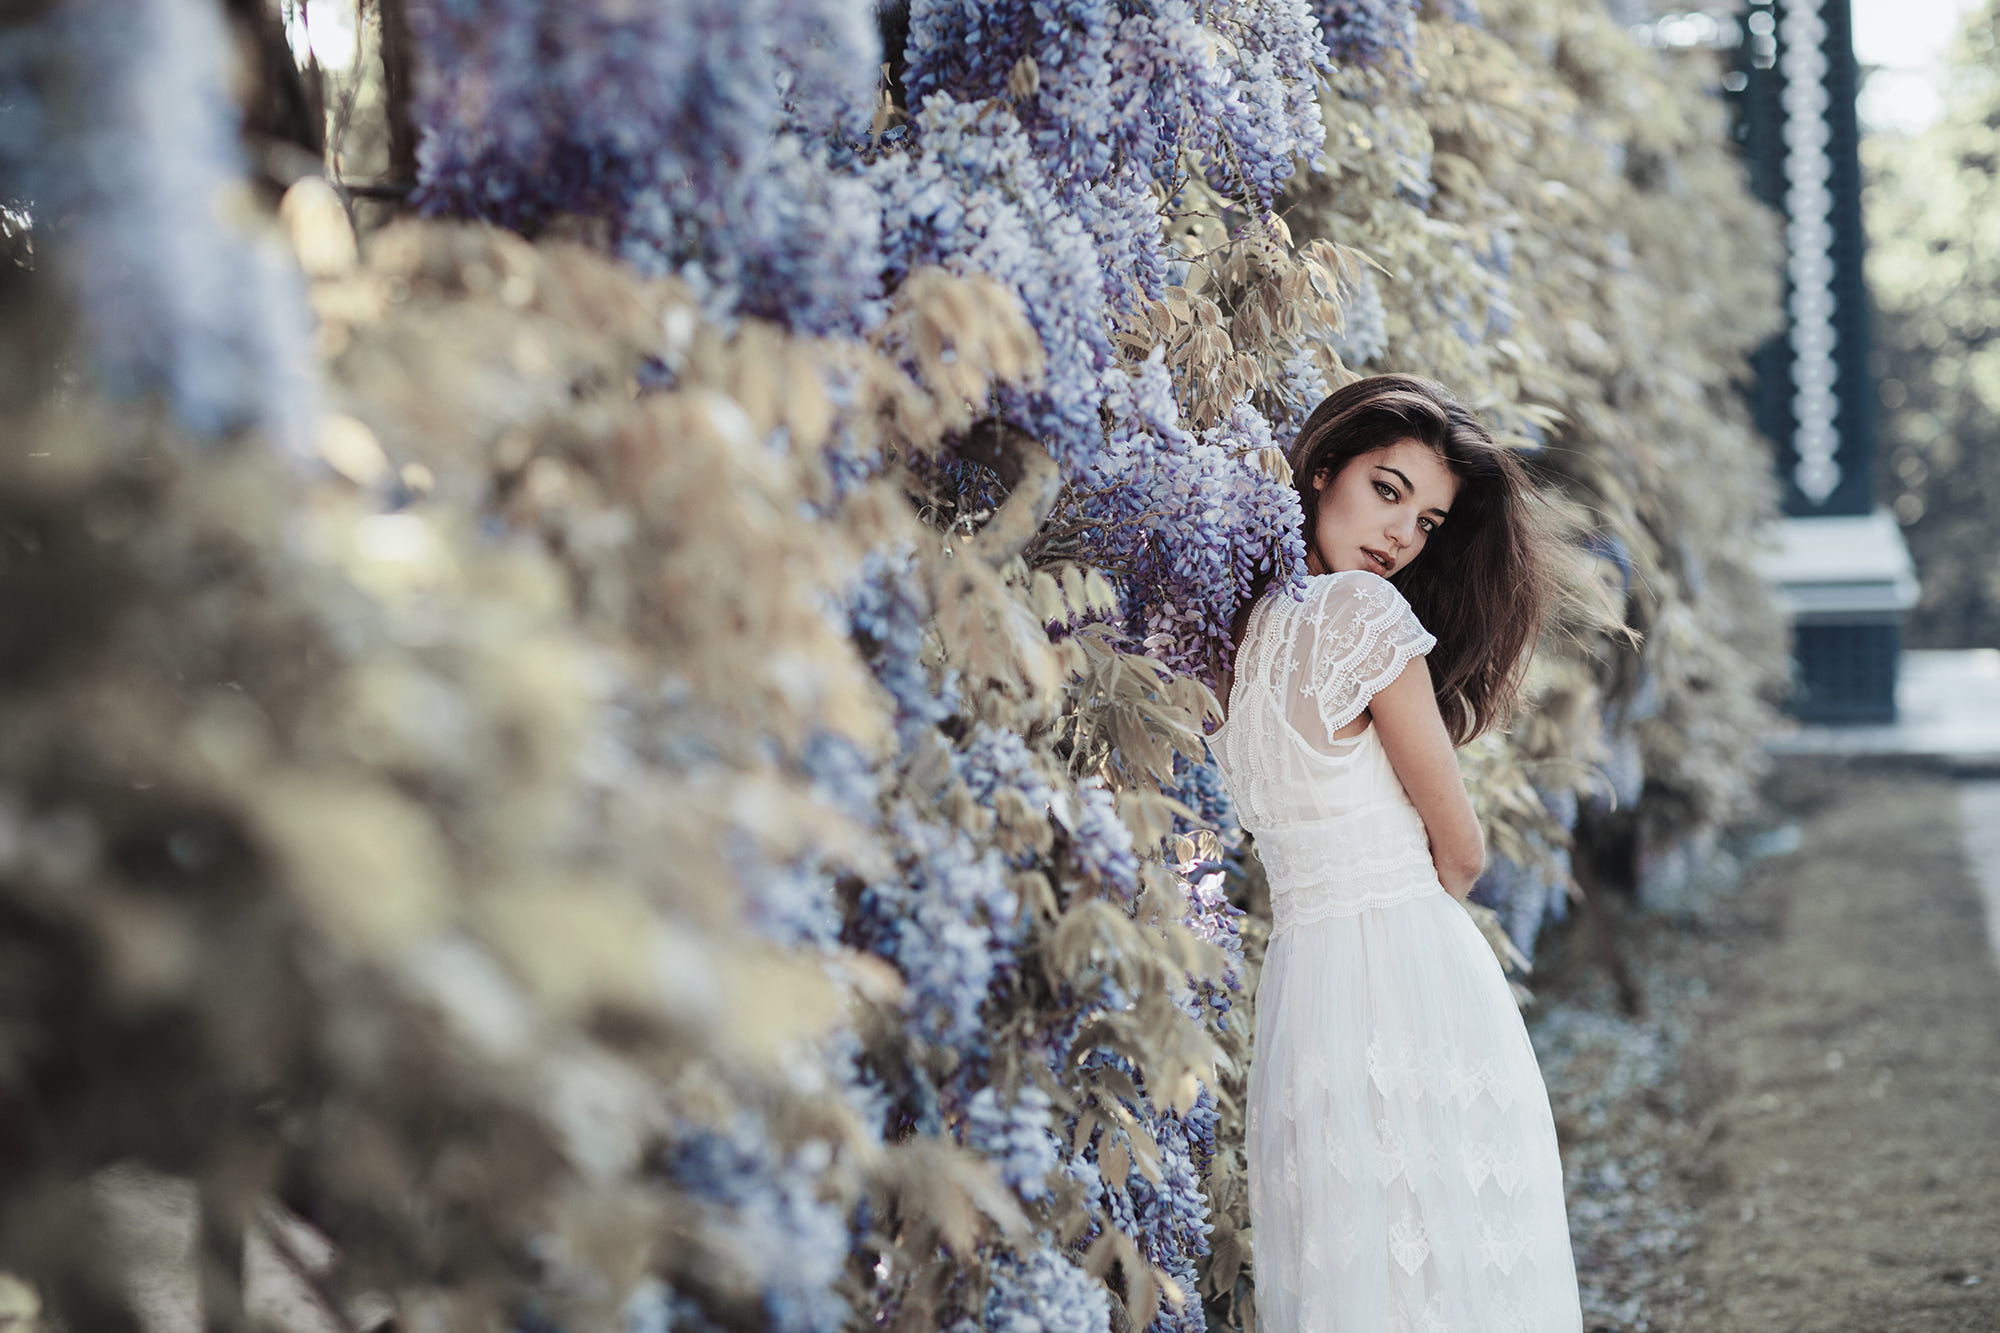 Фото Девушка стоит у цветущей глицинии, фотограф Jovana Rikalo